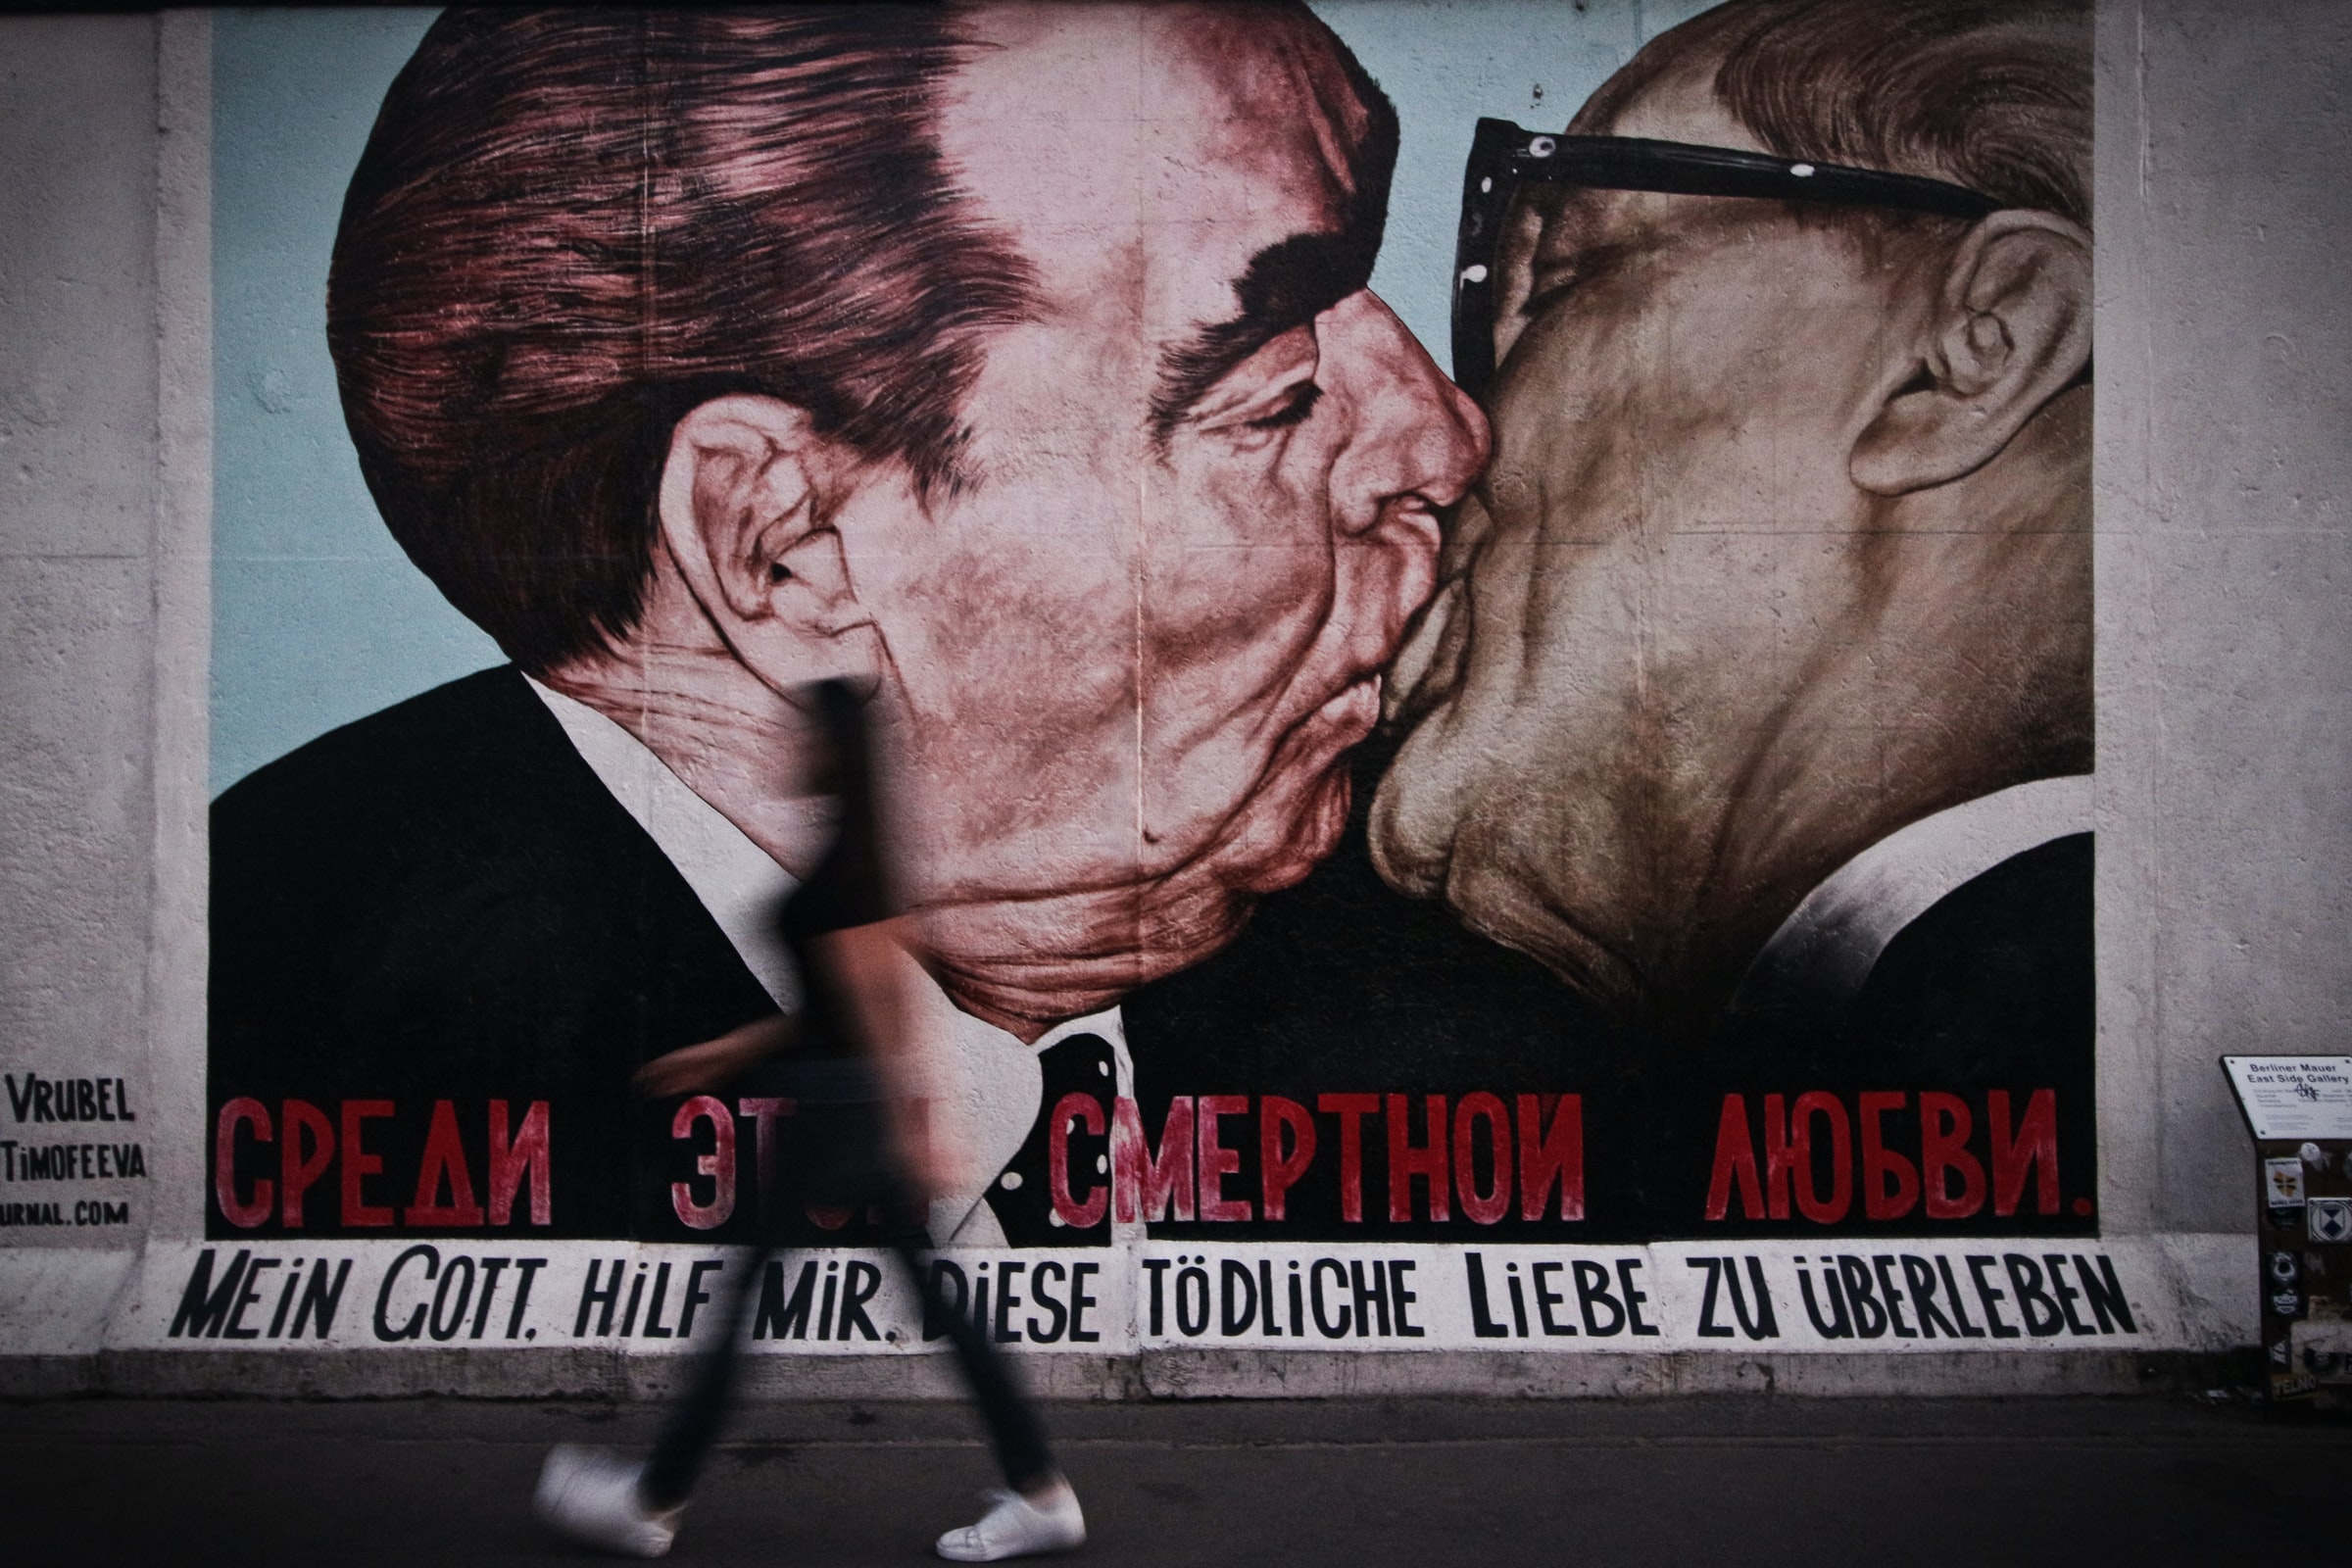 O beijo - Muro de Berlim - East Side Gallery